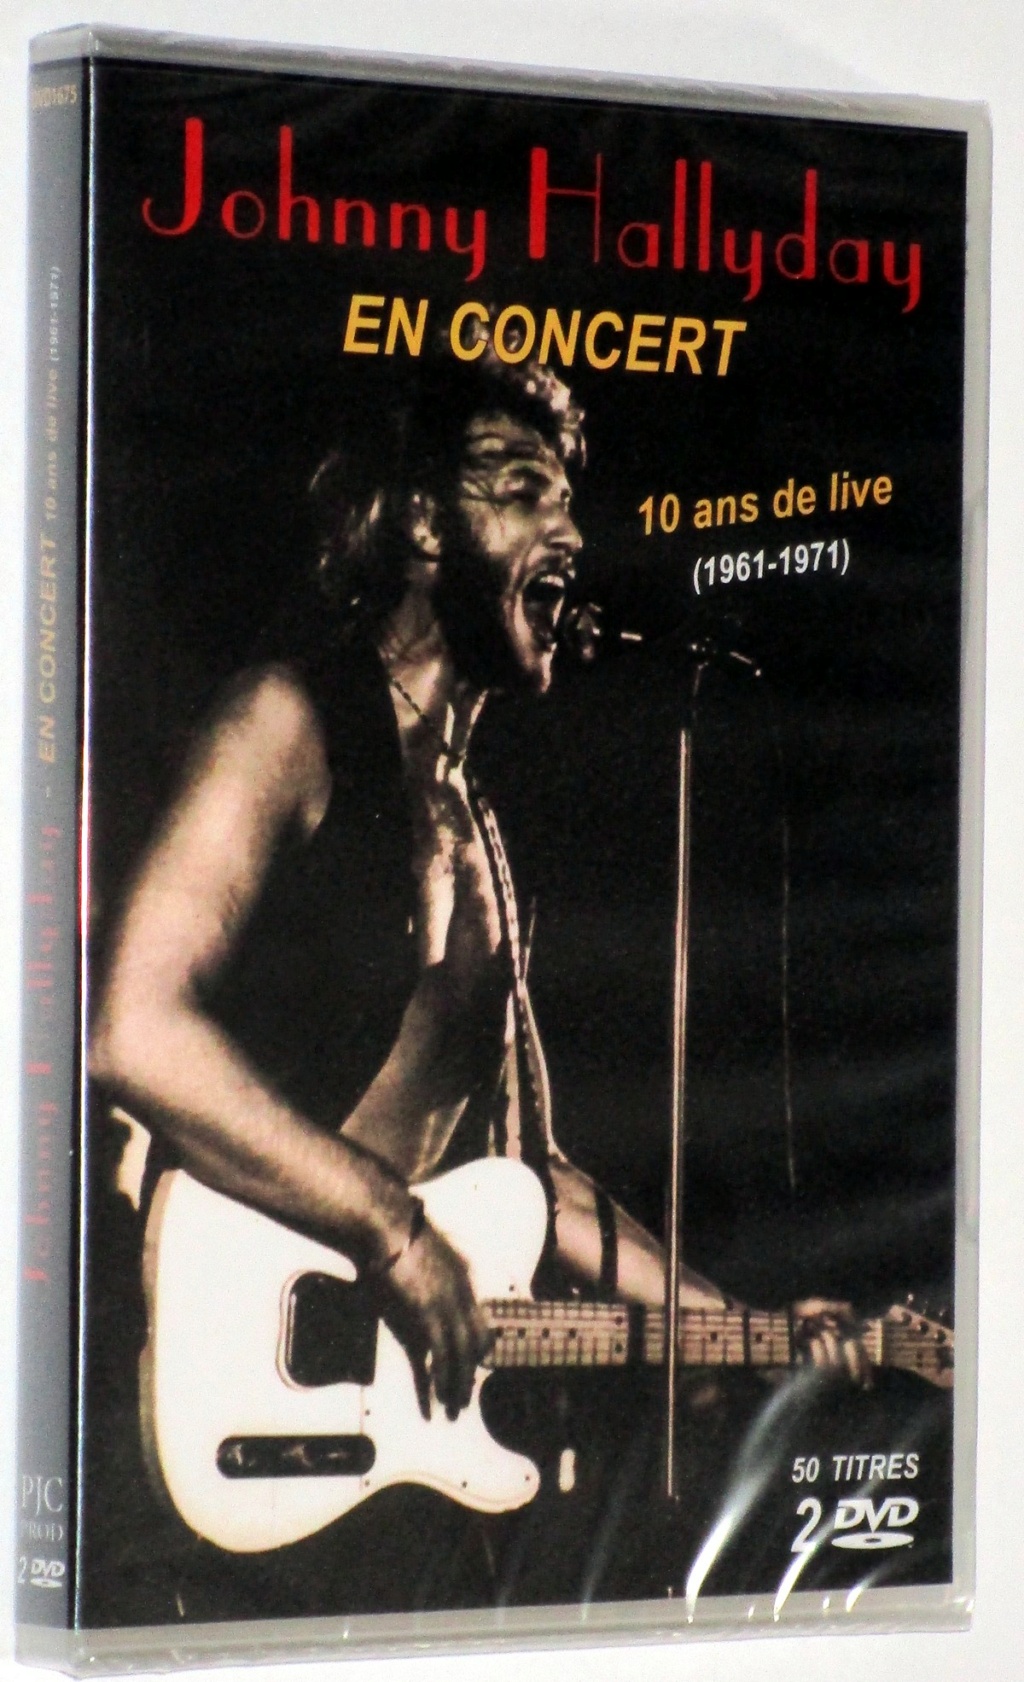 1961-71: EN CONCERT-10 ANS DE LIVE 001-pj10